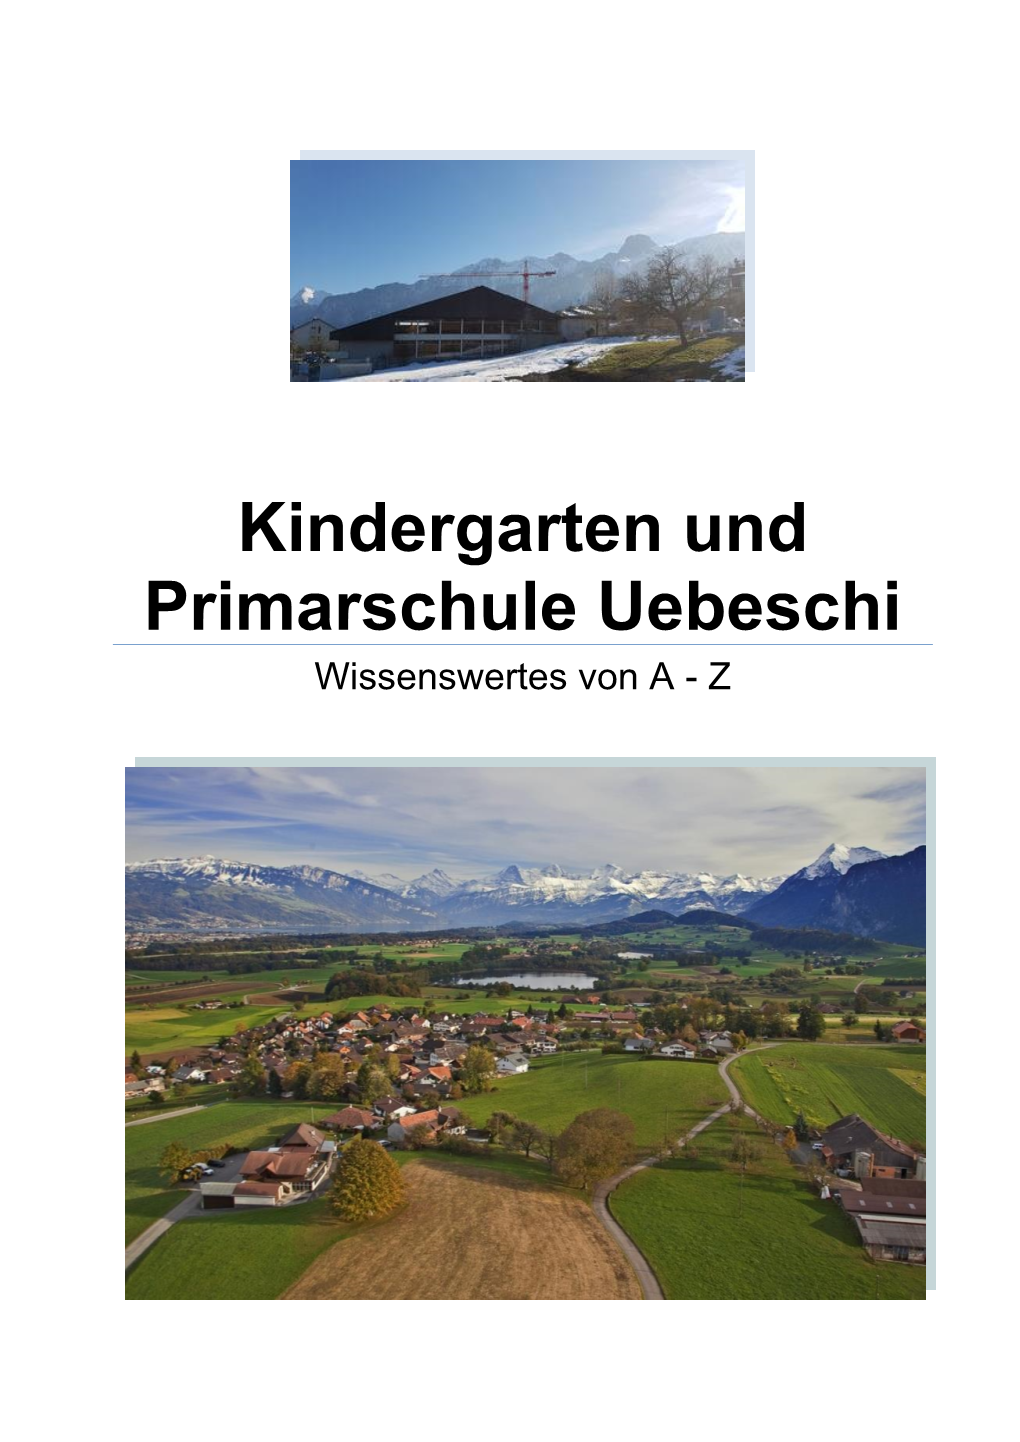 Kindergarten Und Primarschule Uebeschi Wissenswertes Von a - Z